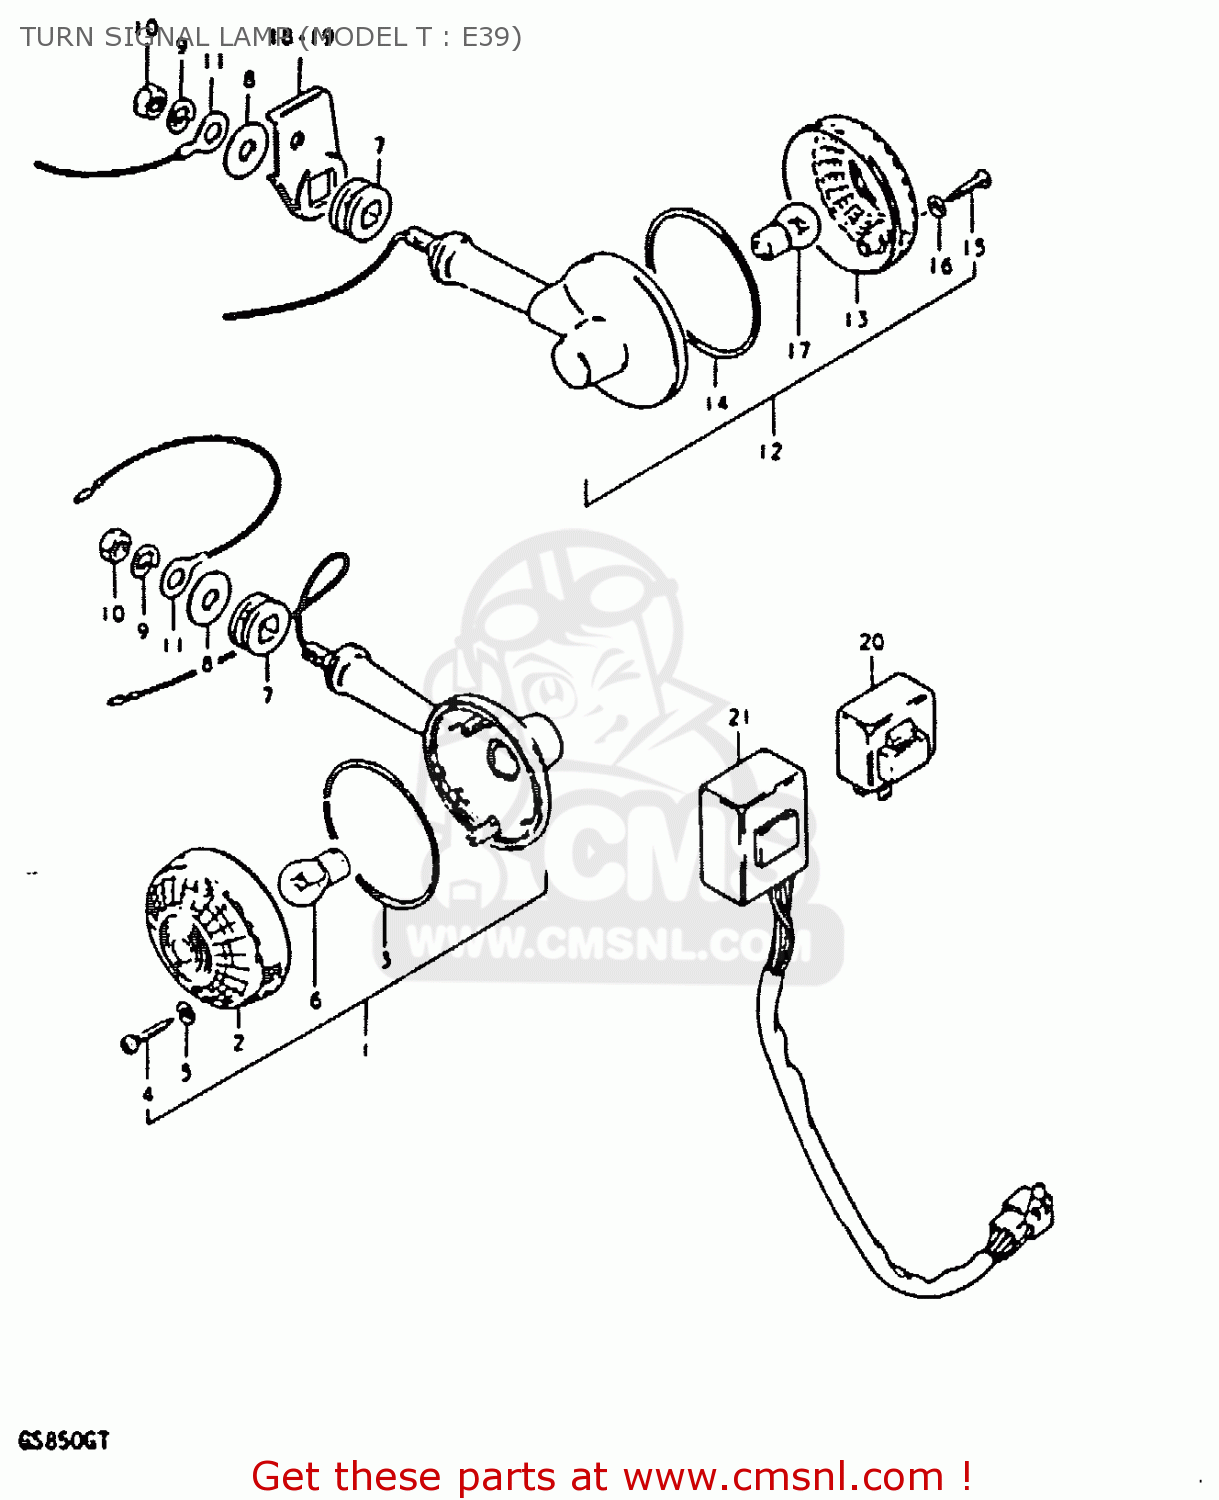 TURN SIGNAL LAMP (MODEL T : E39) GS850G (E01 E02 E04 E17 E18 E21 E22 E24 E25 E26 E34 E39